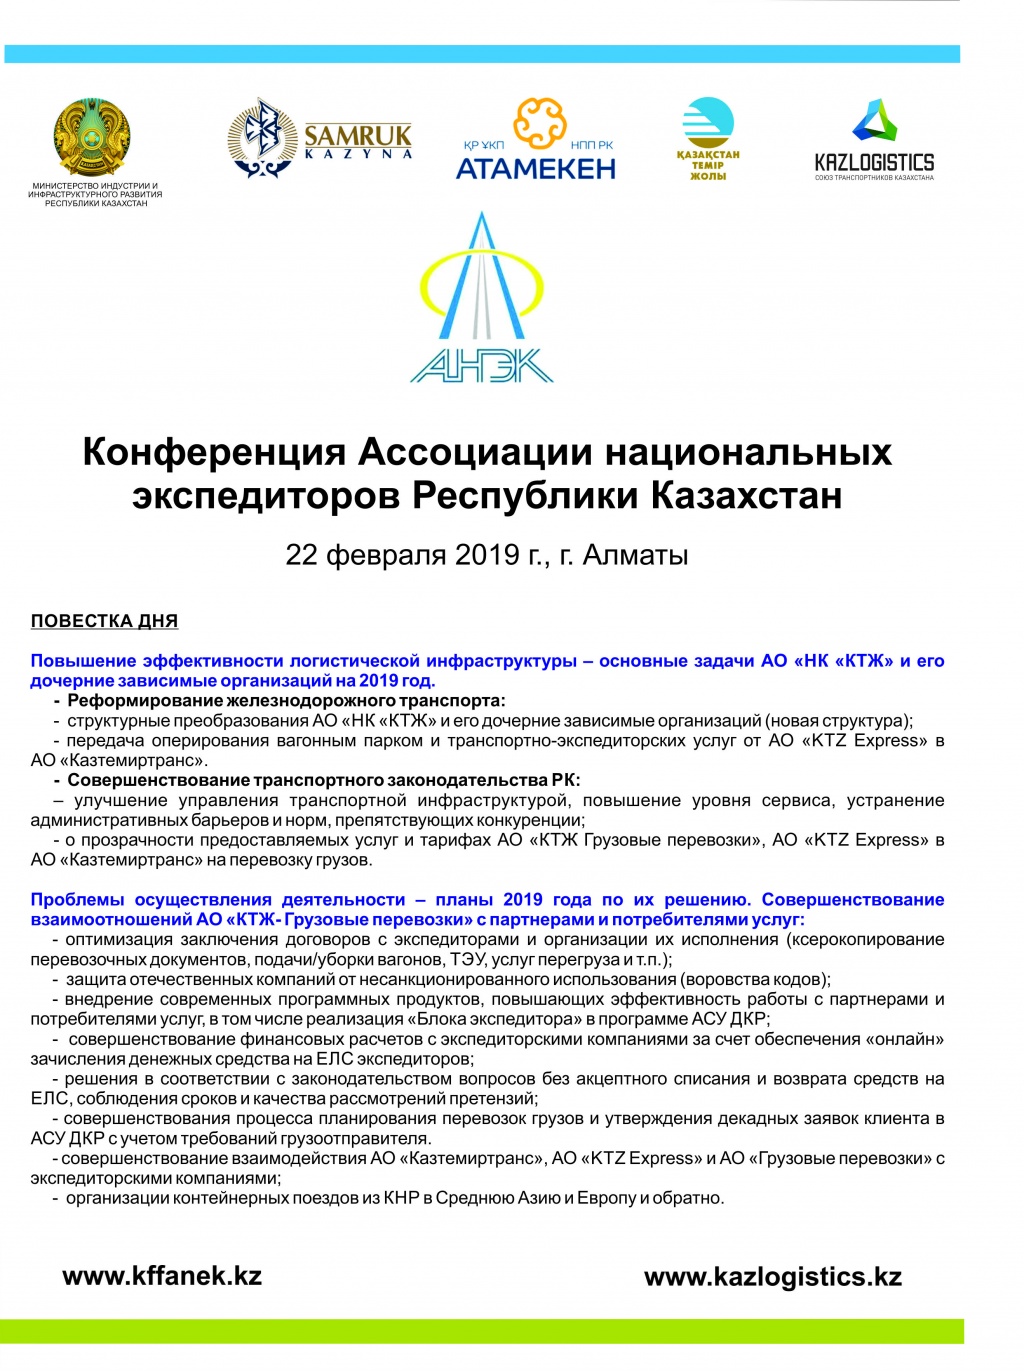 22 февраля 2019г. в г. Алматы состоится конференция Ассоциации национальных перевозчиков Республики Казахстан